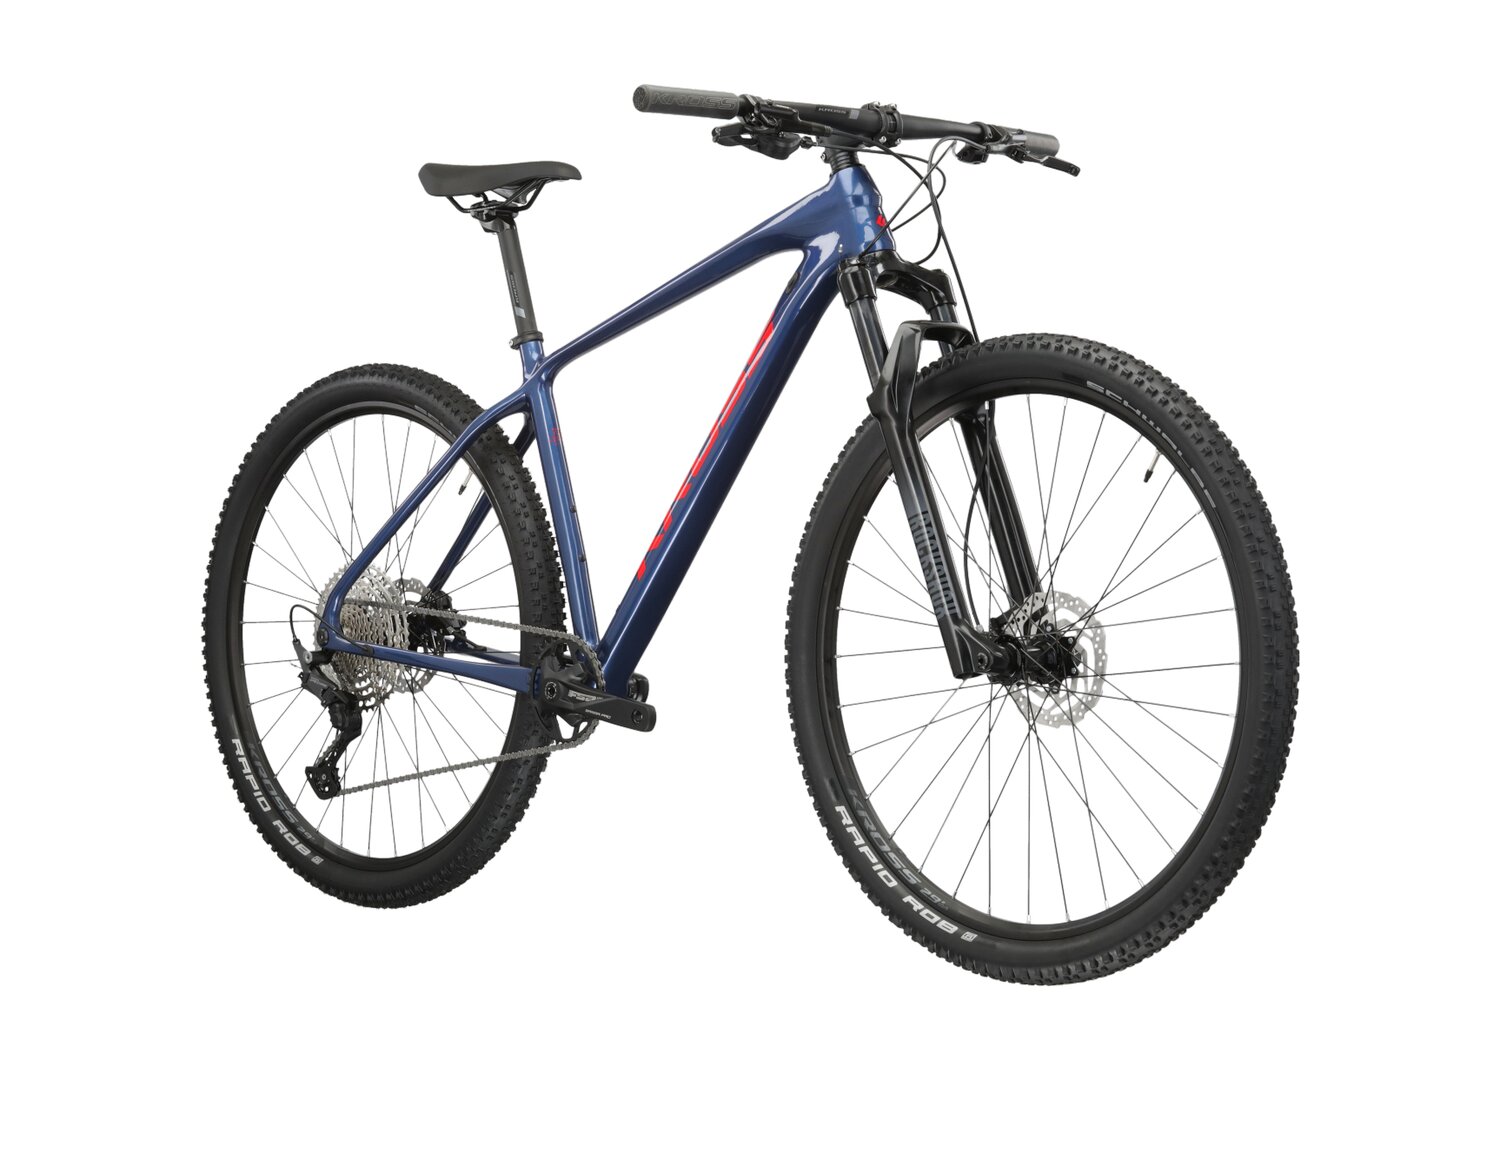  Rower górski MTB XC KROSS Level 7.0 PP na carbonowej ramie w kolorze niebieskim wyposażony w osprzęt Shimano 